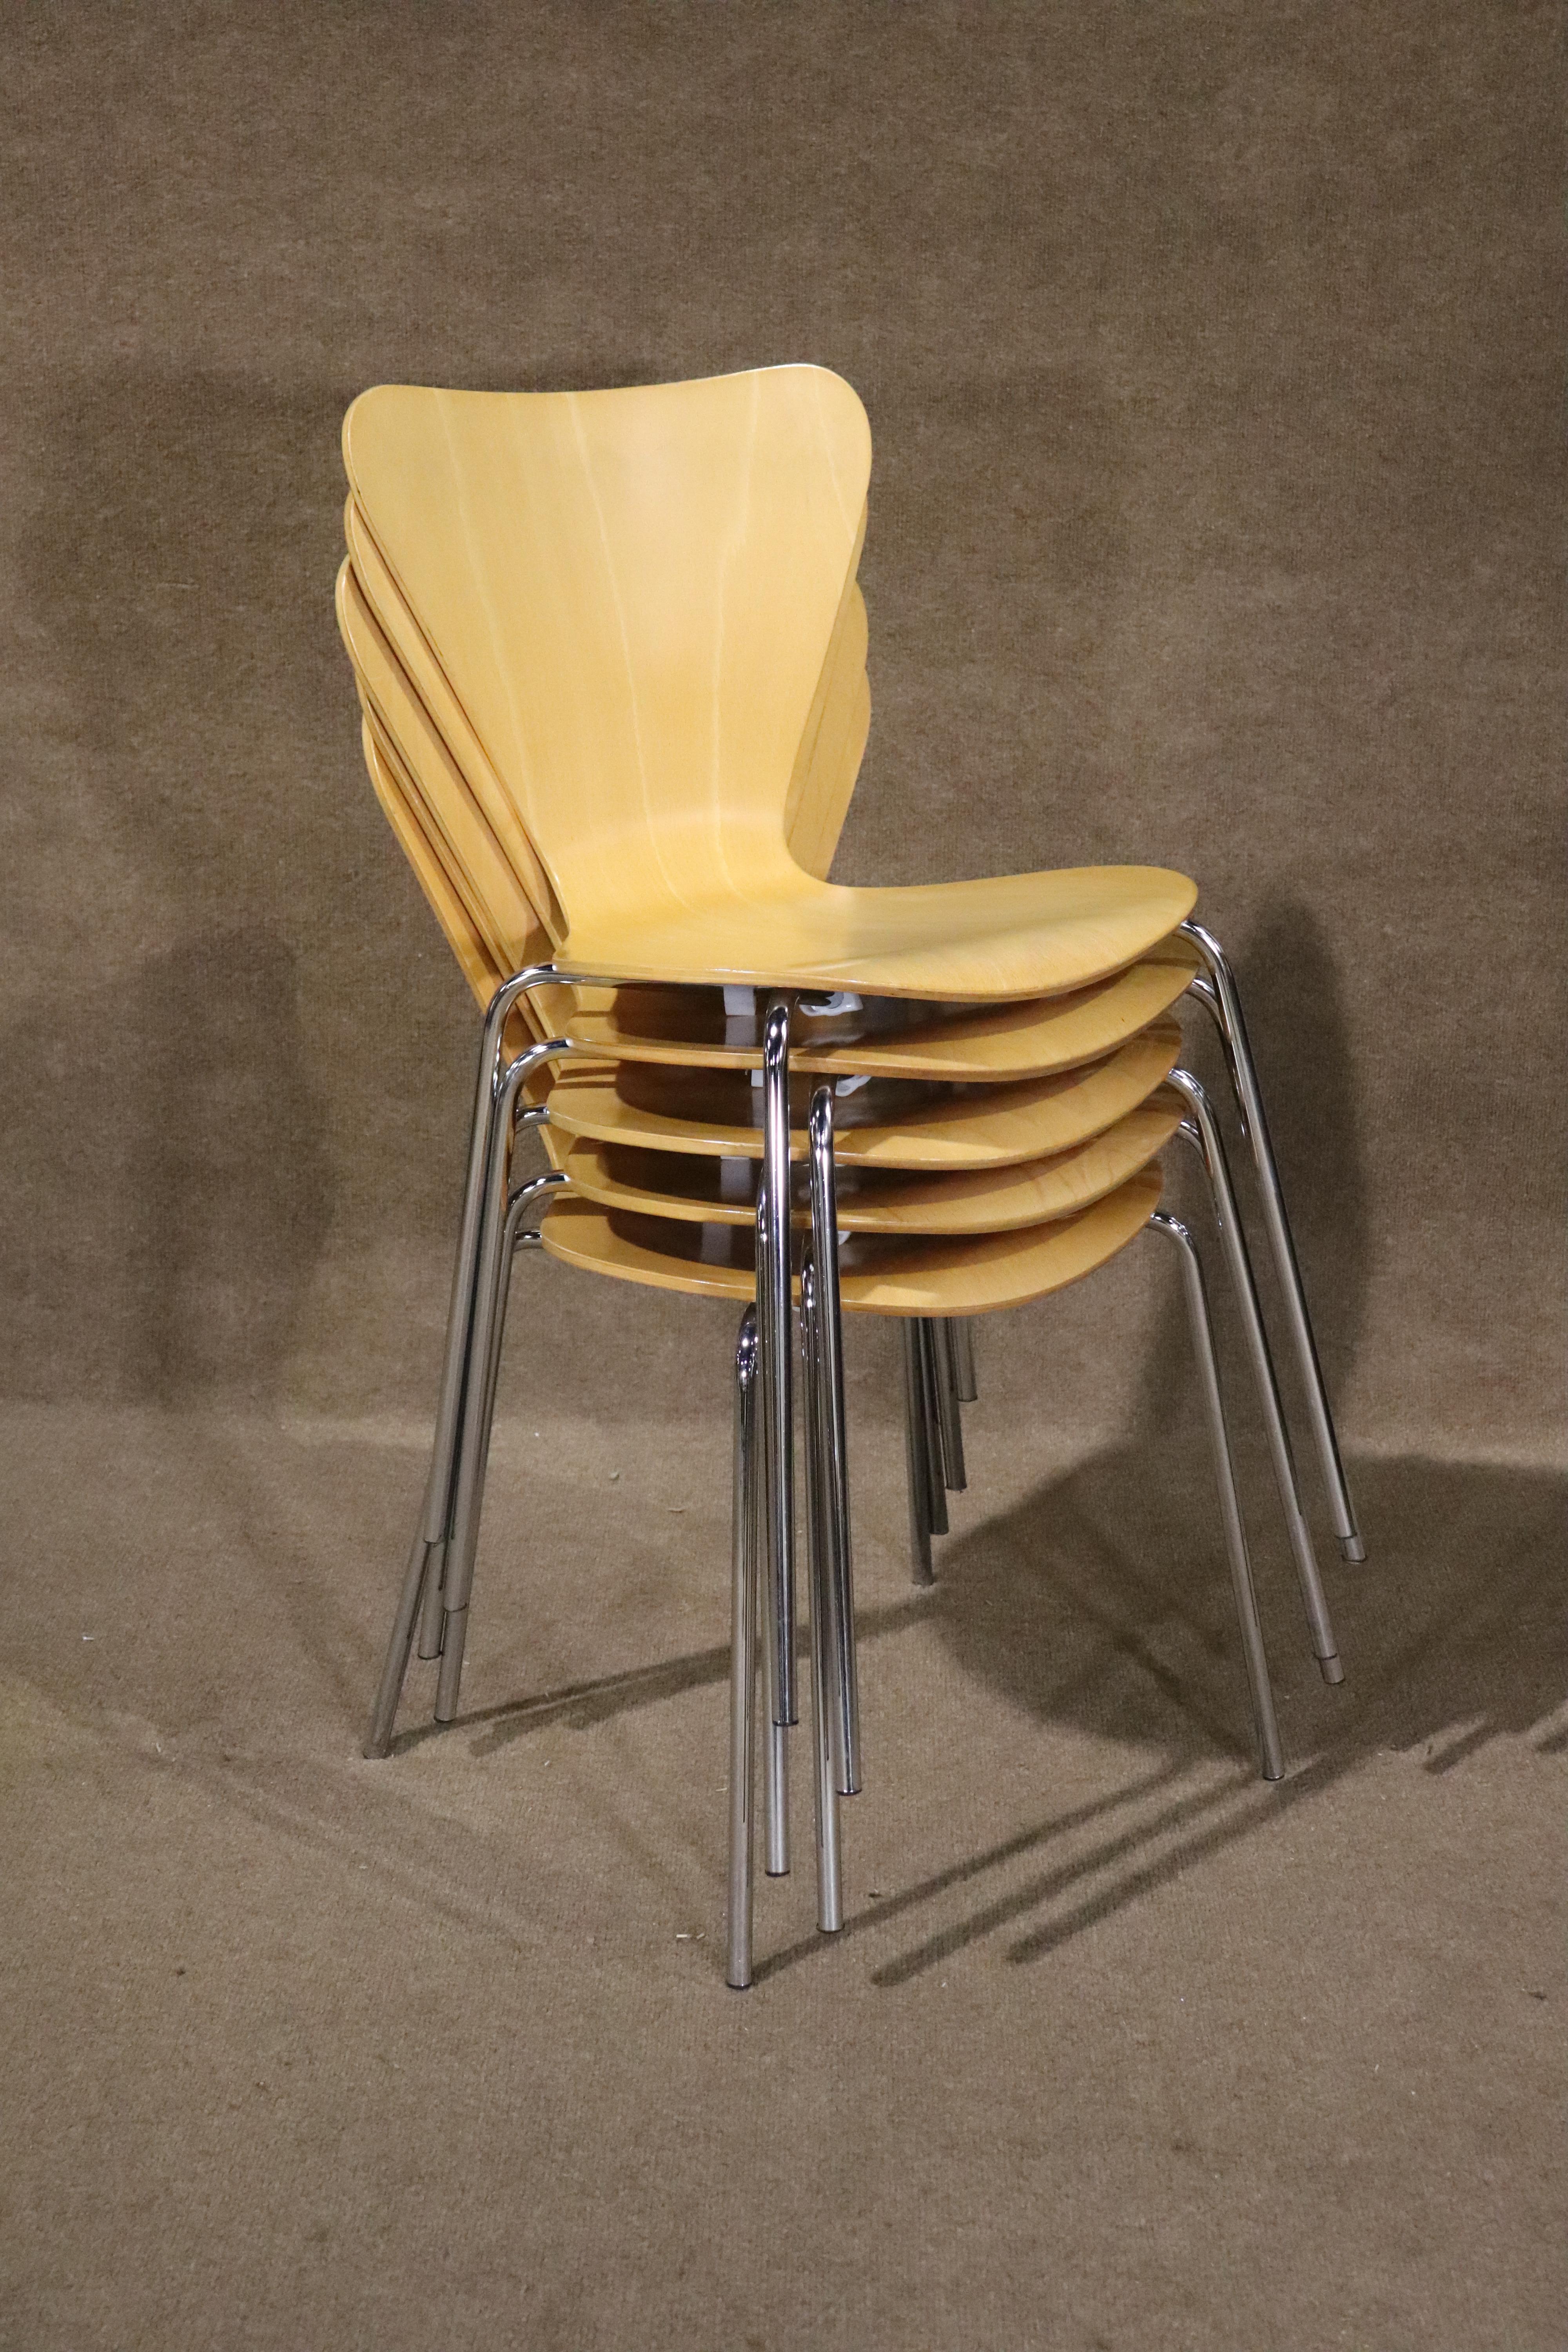 Diese modernen Stühle sind den berühmten Stapelstühlen der Serie 7 von Arne Jacobsen nachempfunden. Schlichtes, modernes Design aus der Mitte des Jahrhunderts mit Bugholzsitzen aus Ahorn auf polierten Chrombeinen.
Bitte bestätigen Sie den Standort